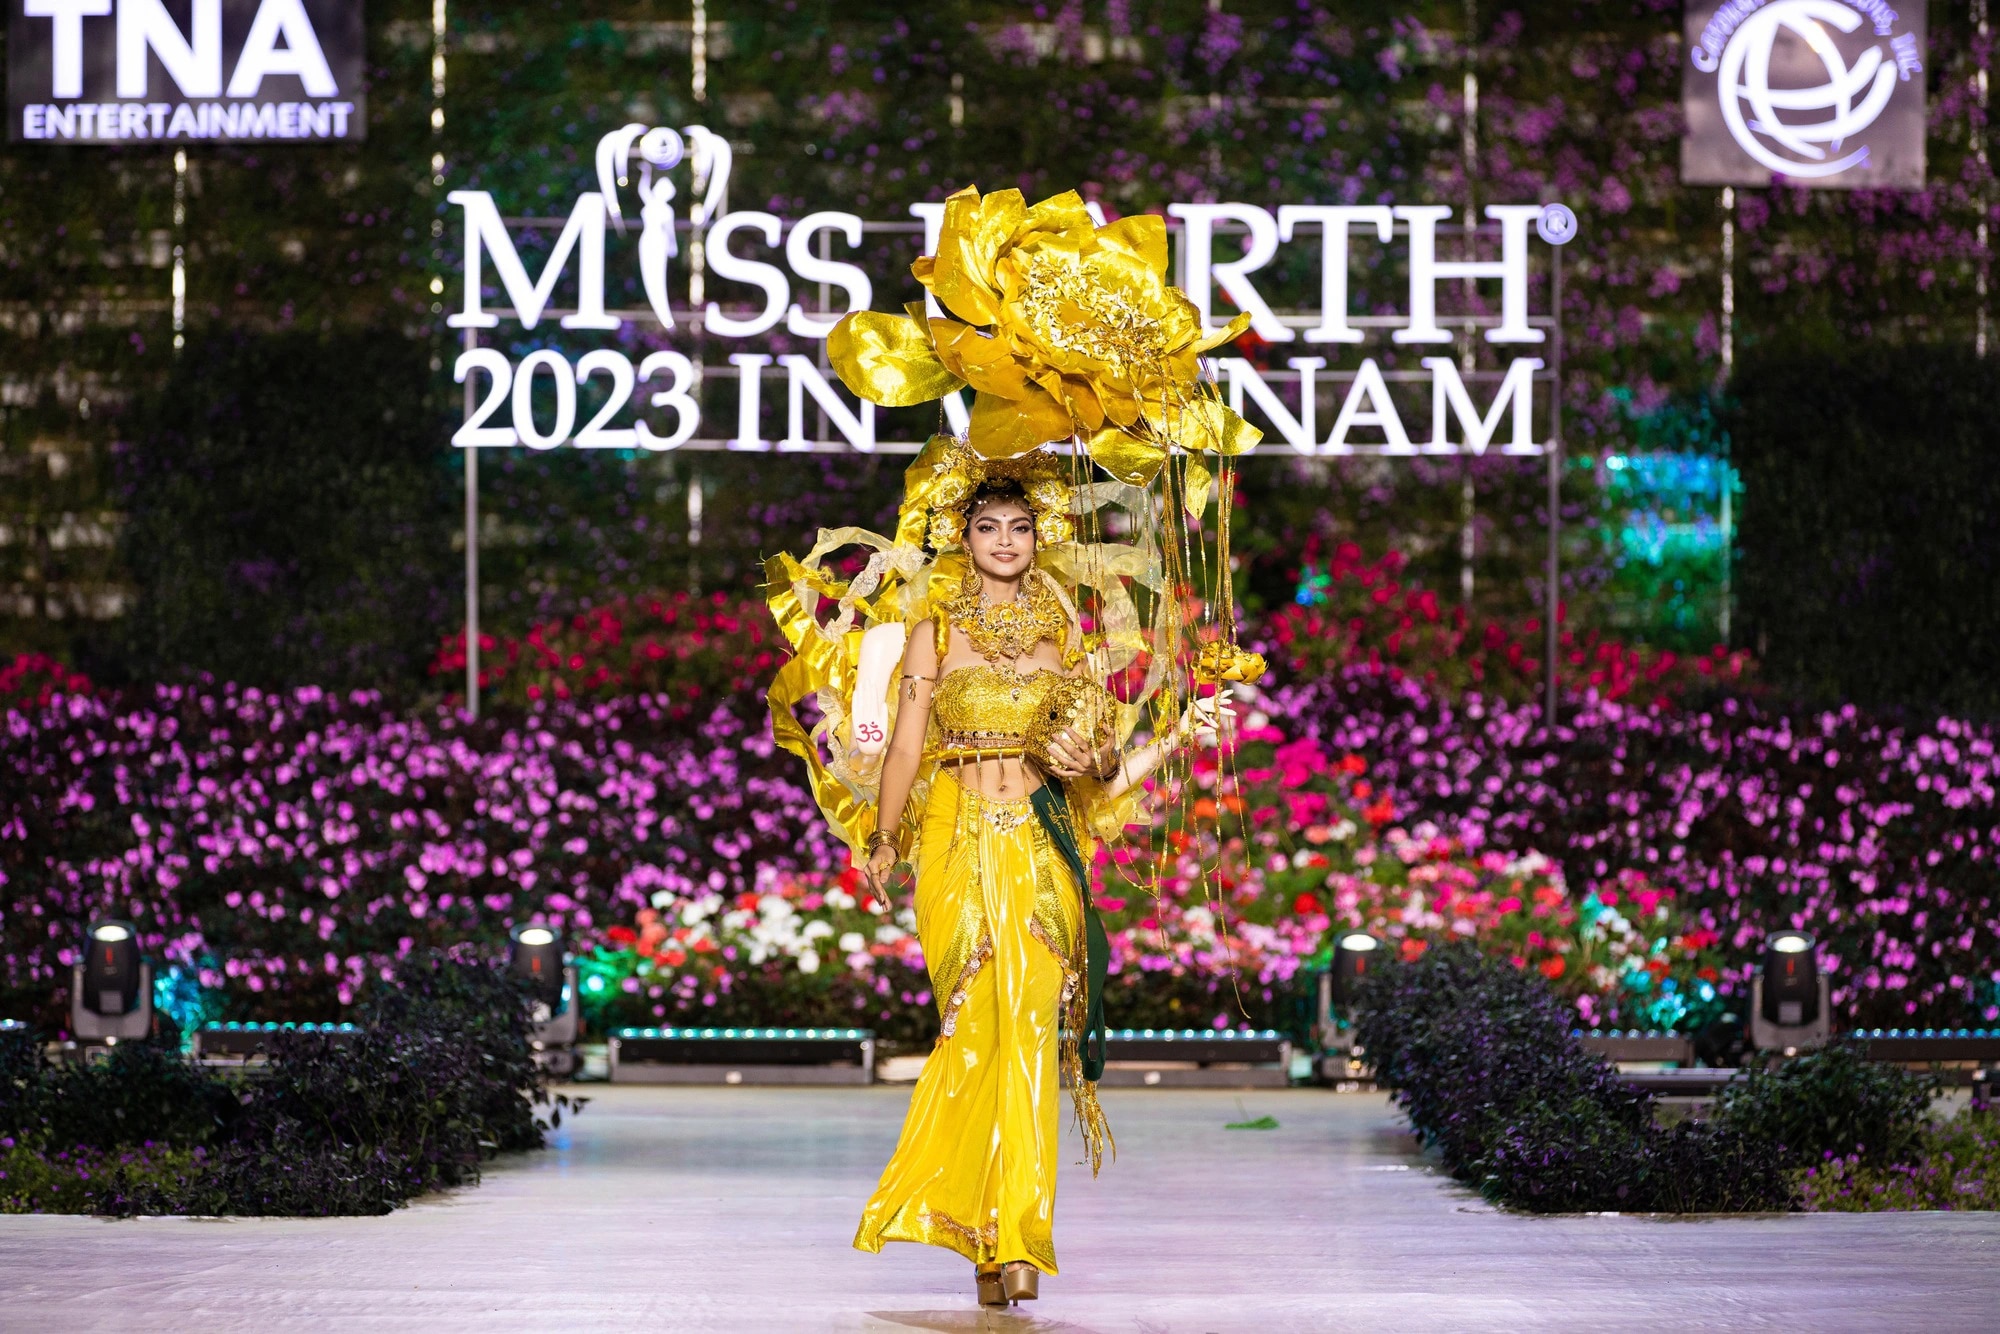 Bán kết Miss Earth 2023 màn trình Trang phục Dân tộc bùng nổ hình ảnh cỏ hoa, muông thú - Ảnh 25.